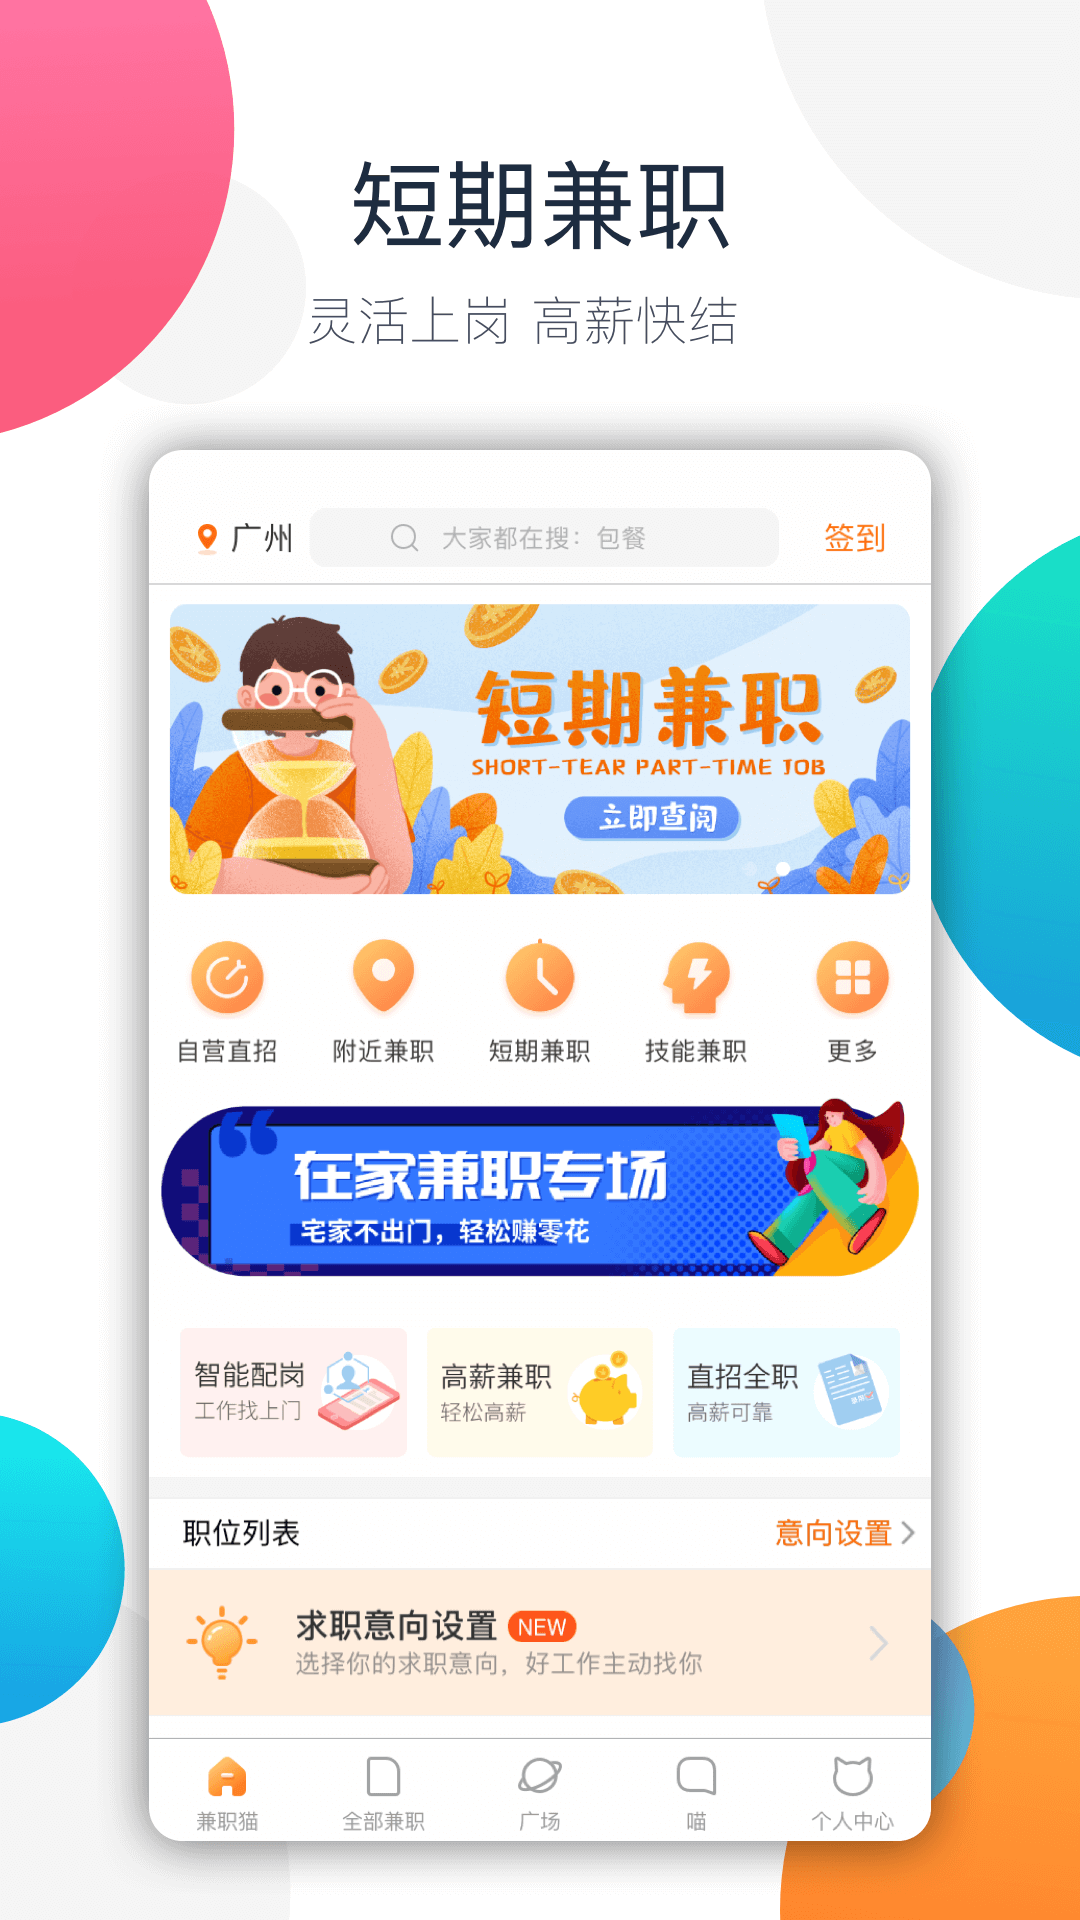 【自动充值】刺猬猫阅读 1000猫饼干充值 官方充值-Taobao